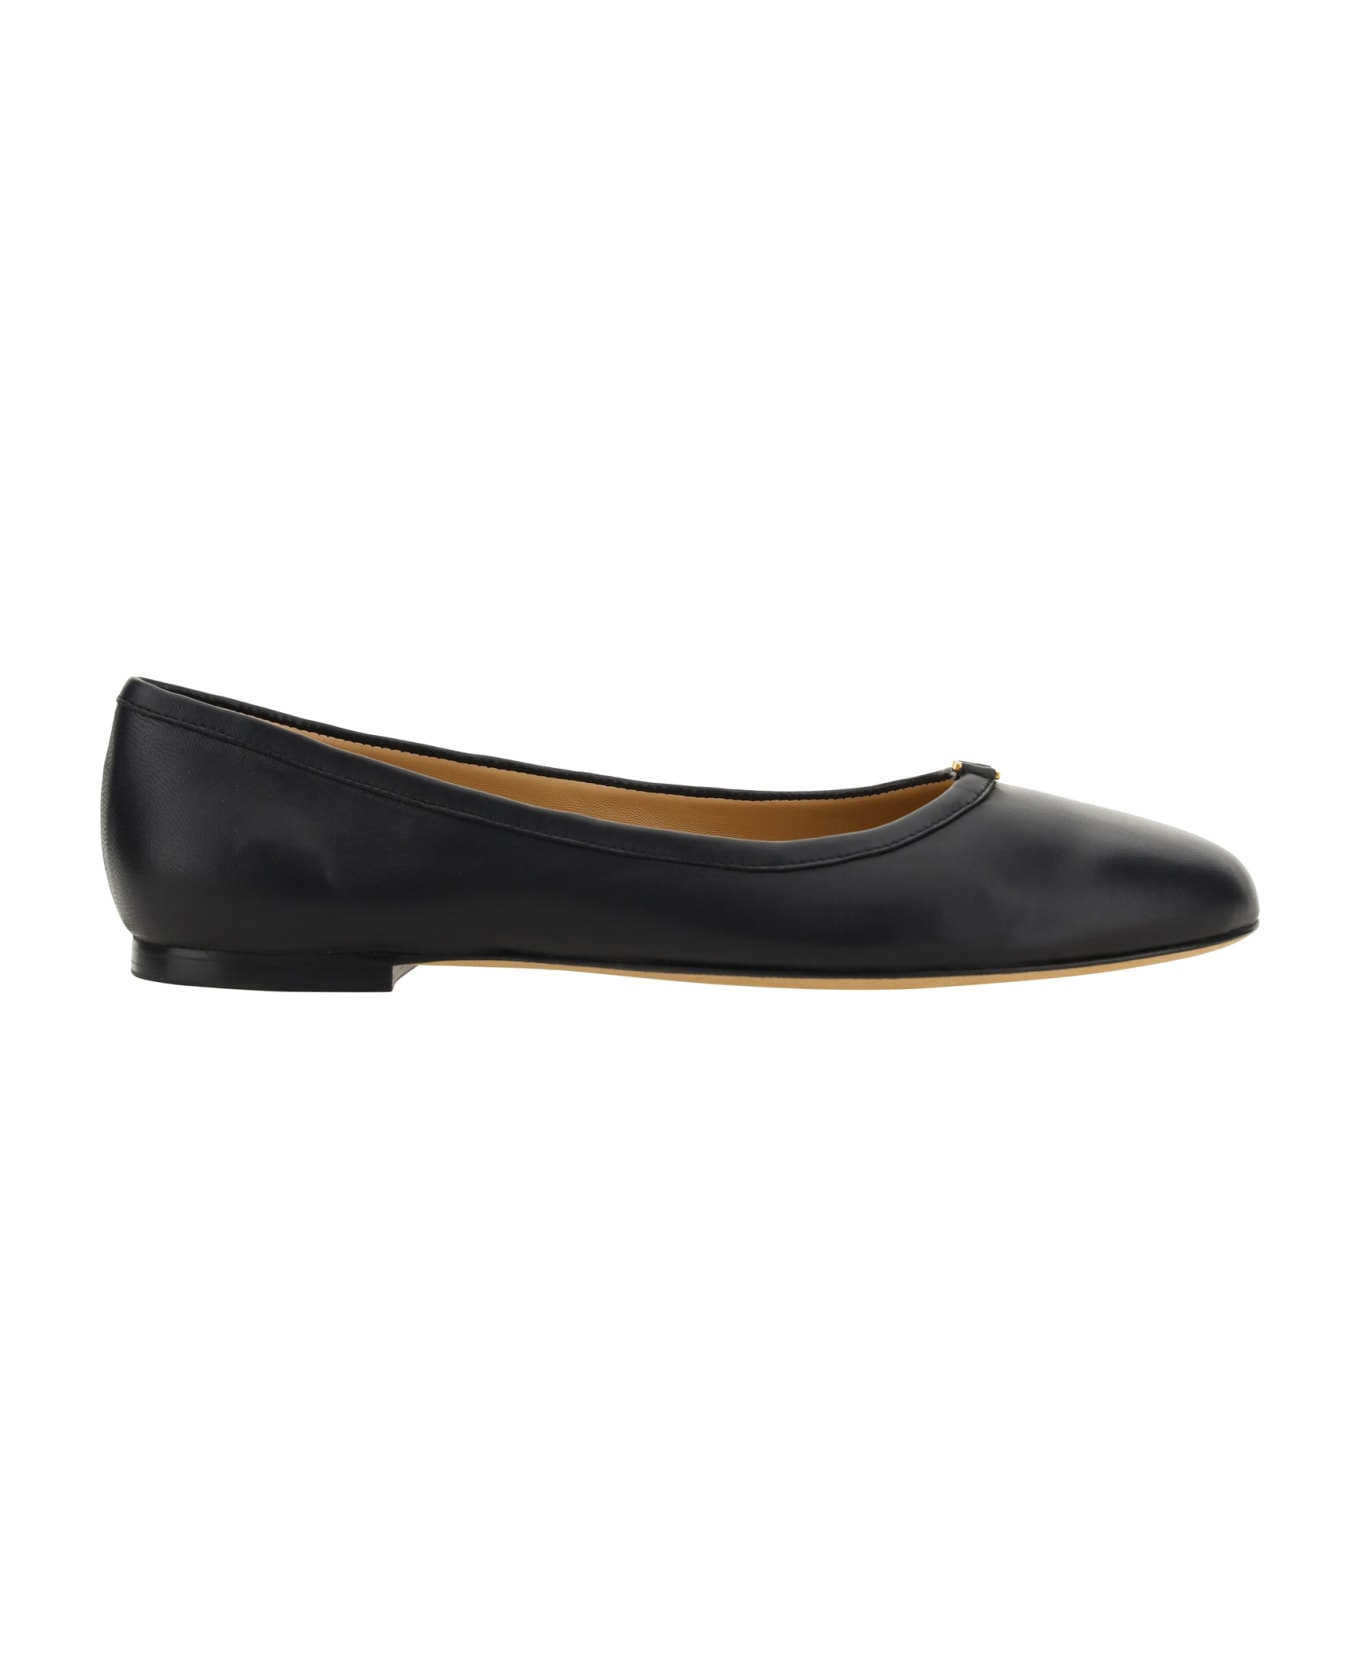 Chloé Marcie Ballet Shoes - Black フラットシューズ